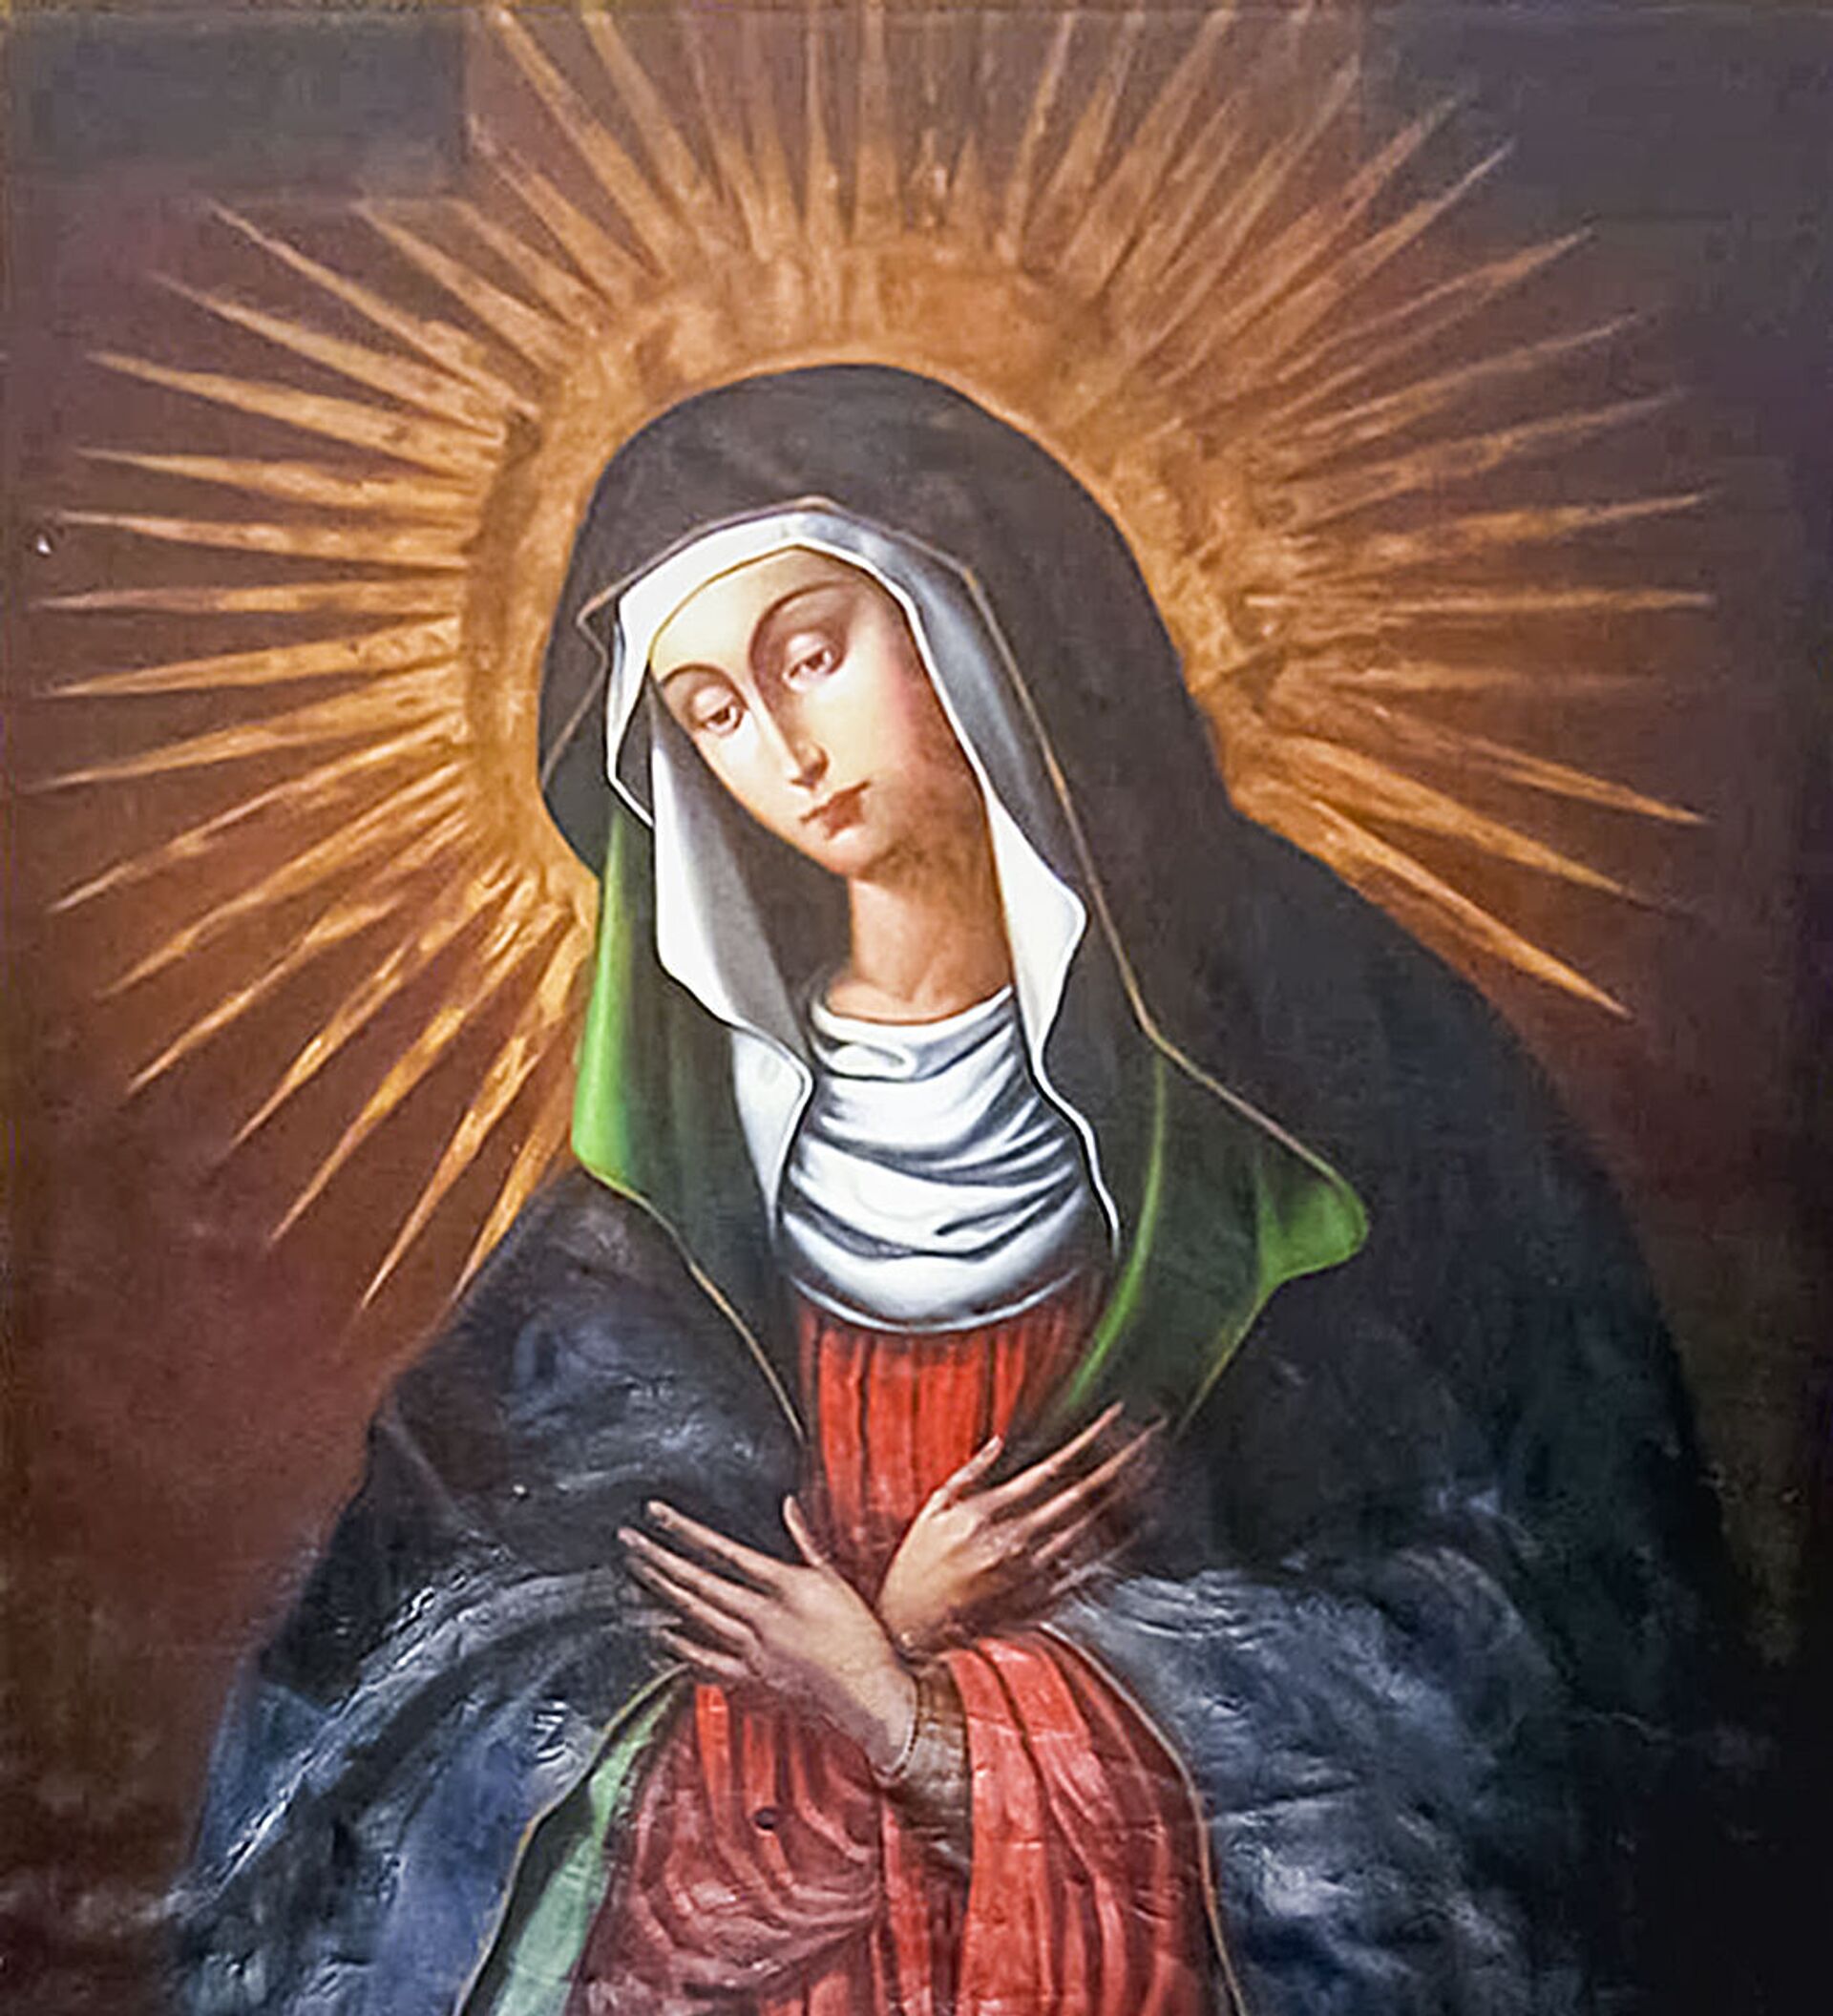 Виленская икона божией матери фото оригинал